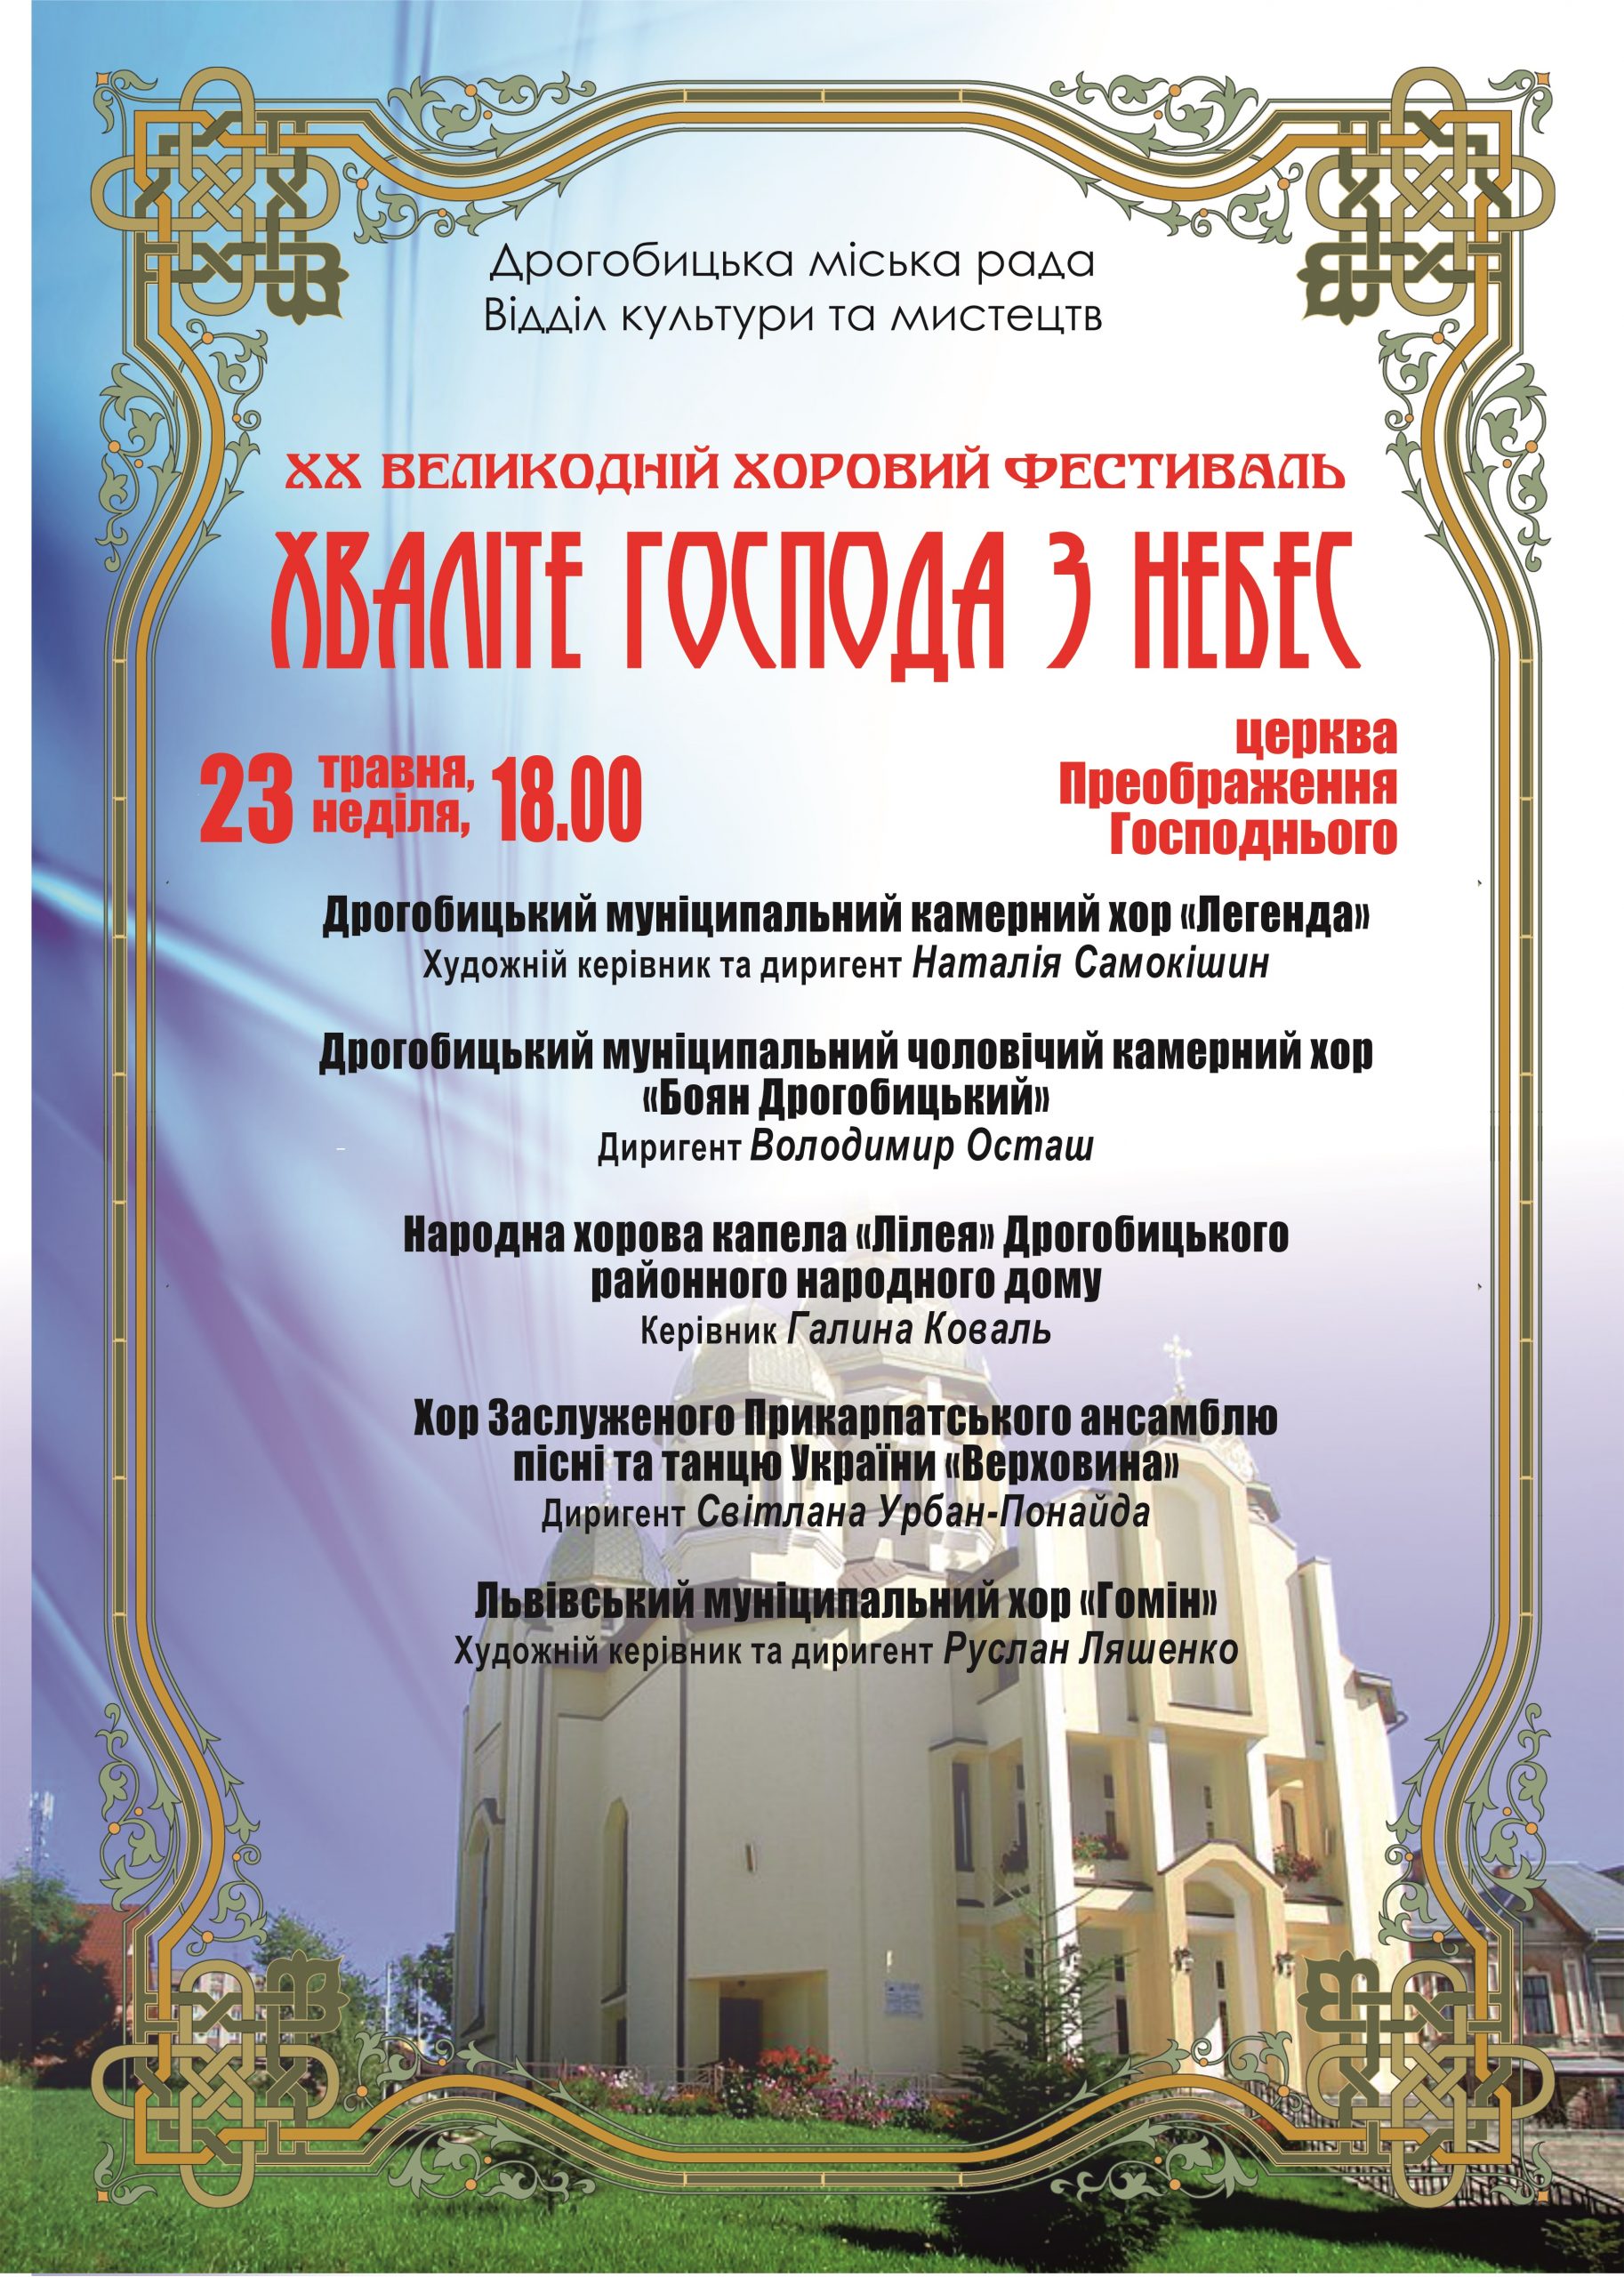 23 травня у Дрогобичі відбудеться ювілейний ХХ Великодній хоровий фестиваль “Хваліте Господа з небес”